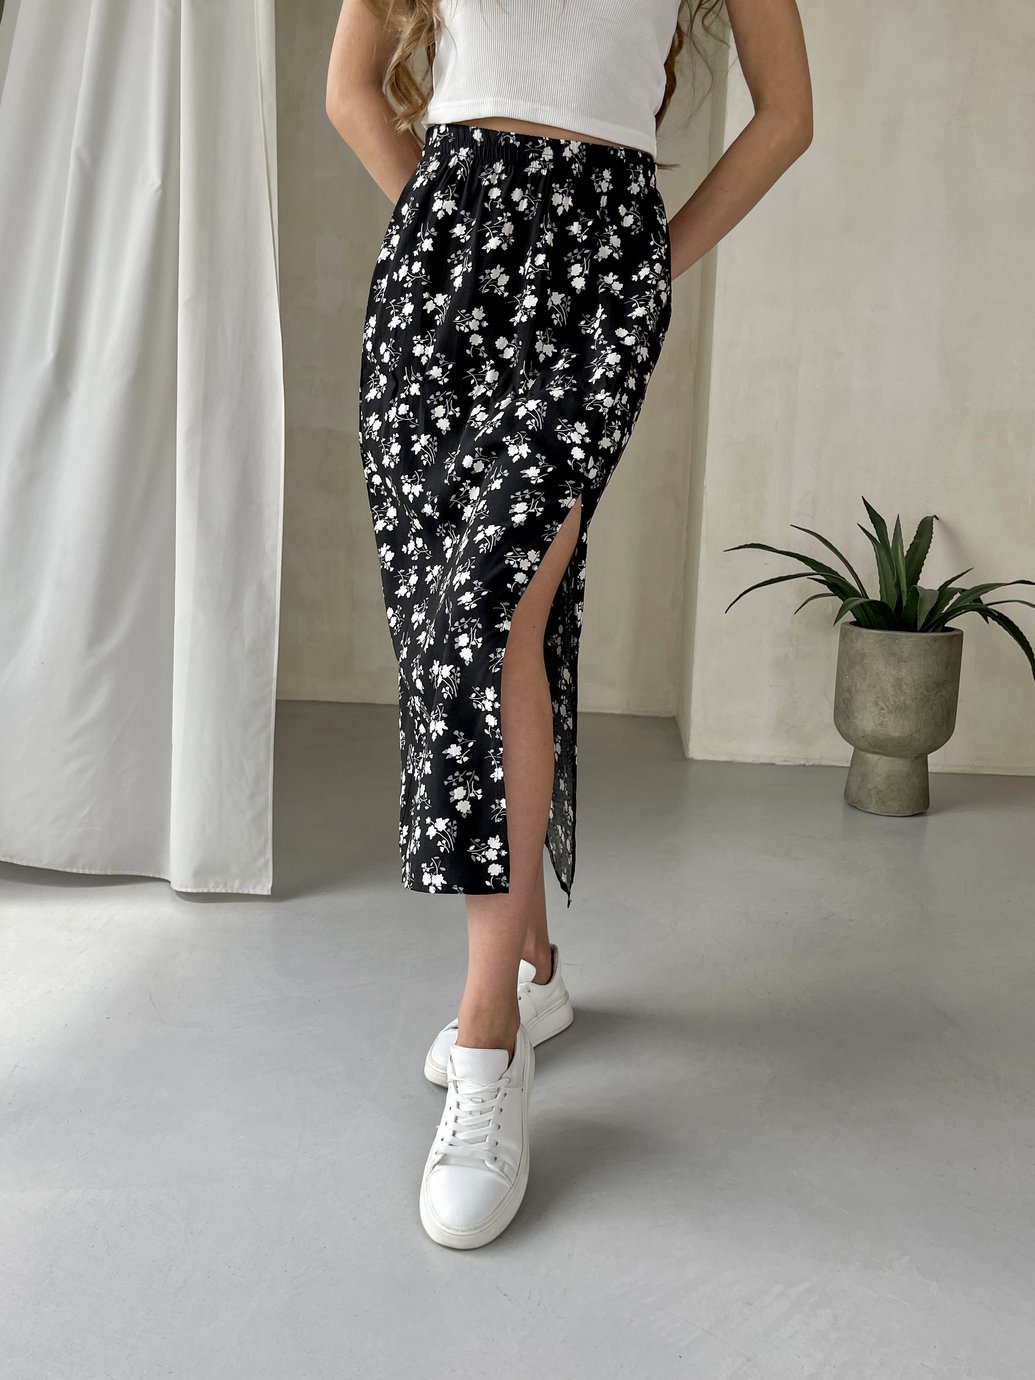 Купить Длинная женская юбка ниже колена с размером в цветочек Merlini Равенна 400000125, размер 42-44 (S-M) в интернет-магазине